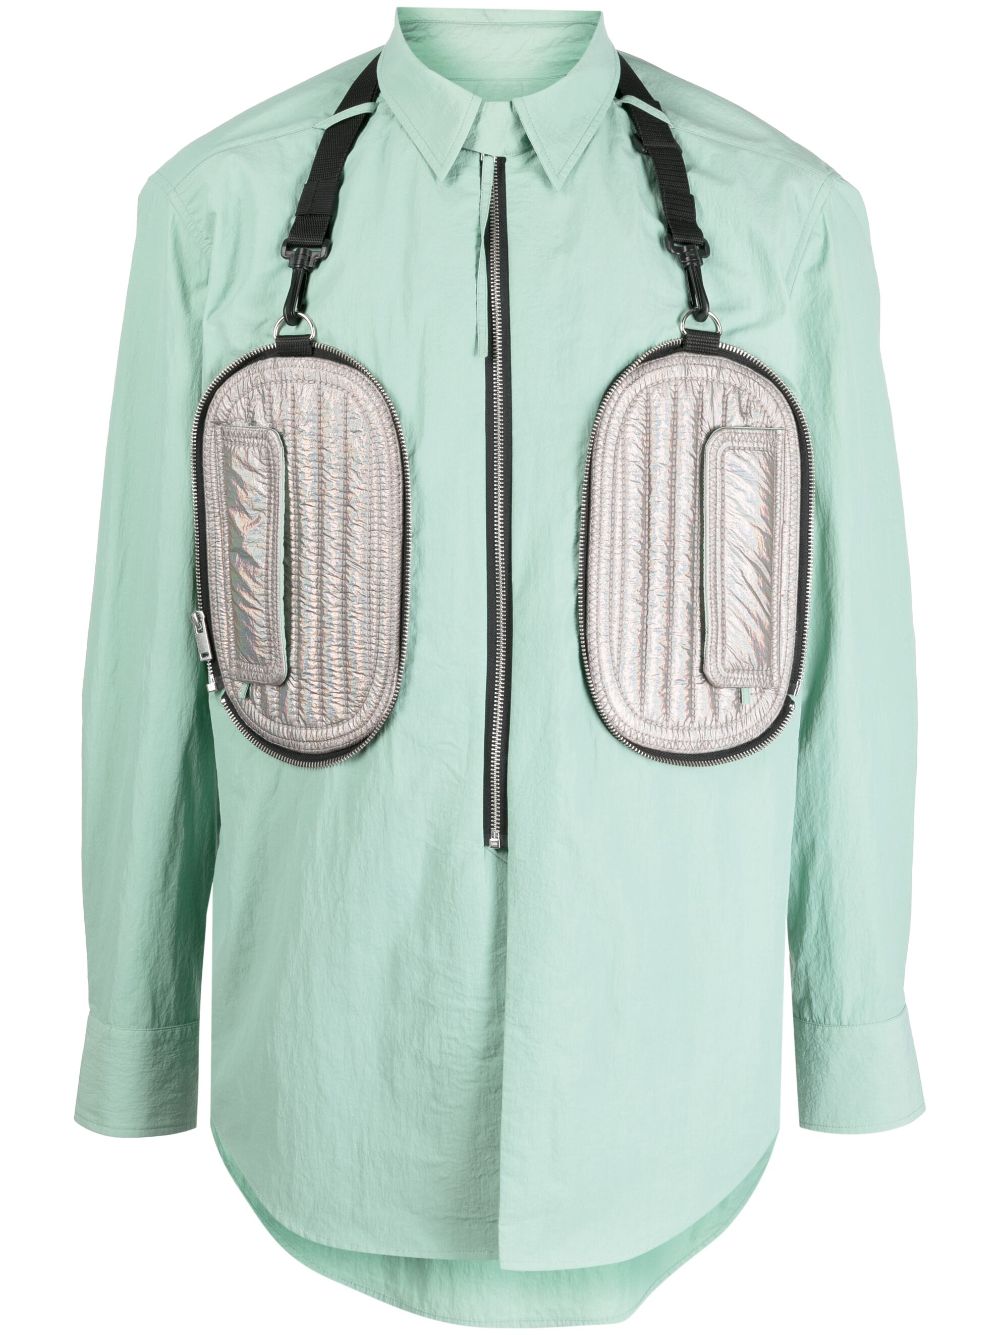 padded-pocket zip-up shirt